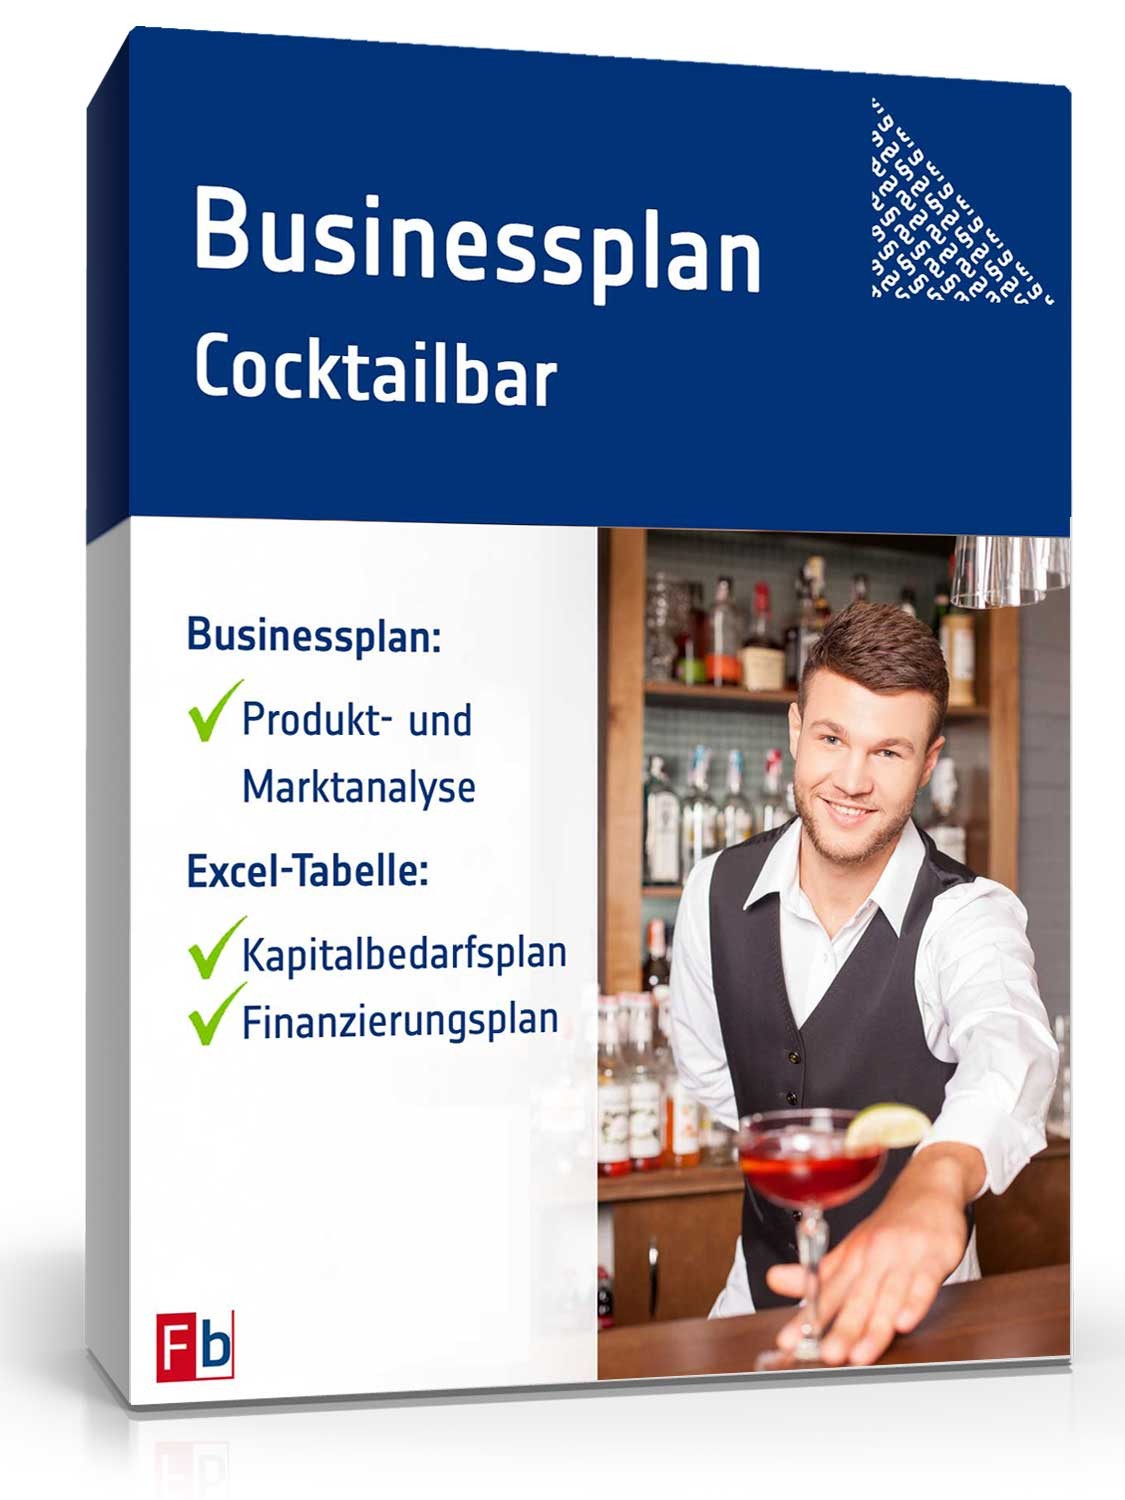 Hauptbild des Produkts: Businessplan Cocktailbar